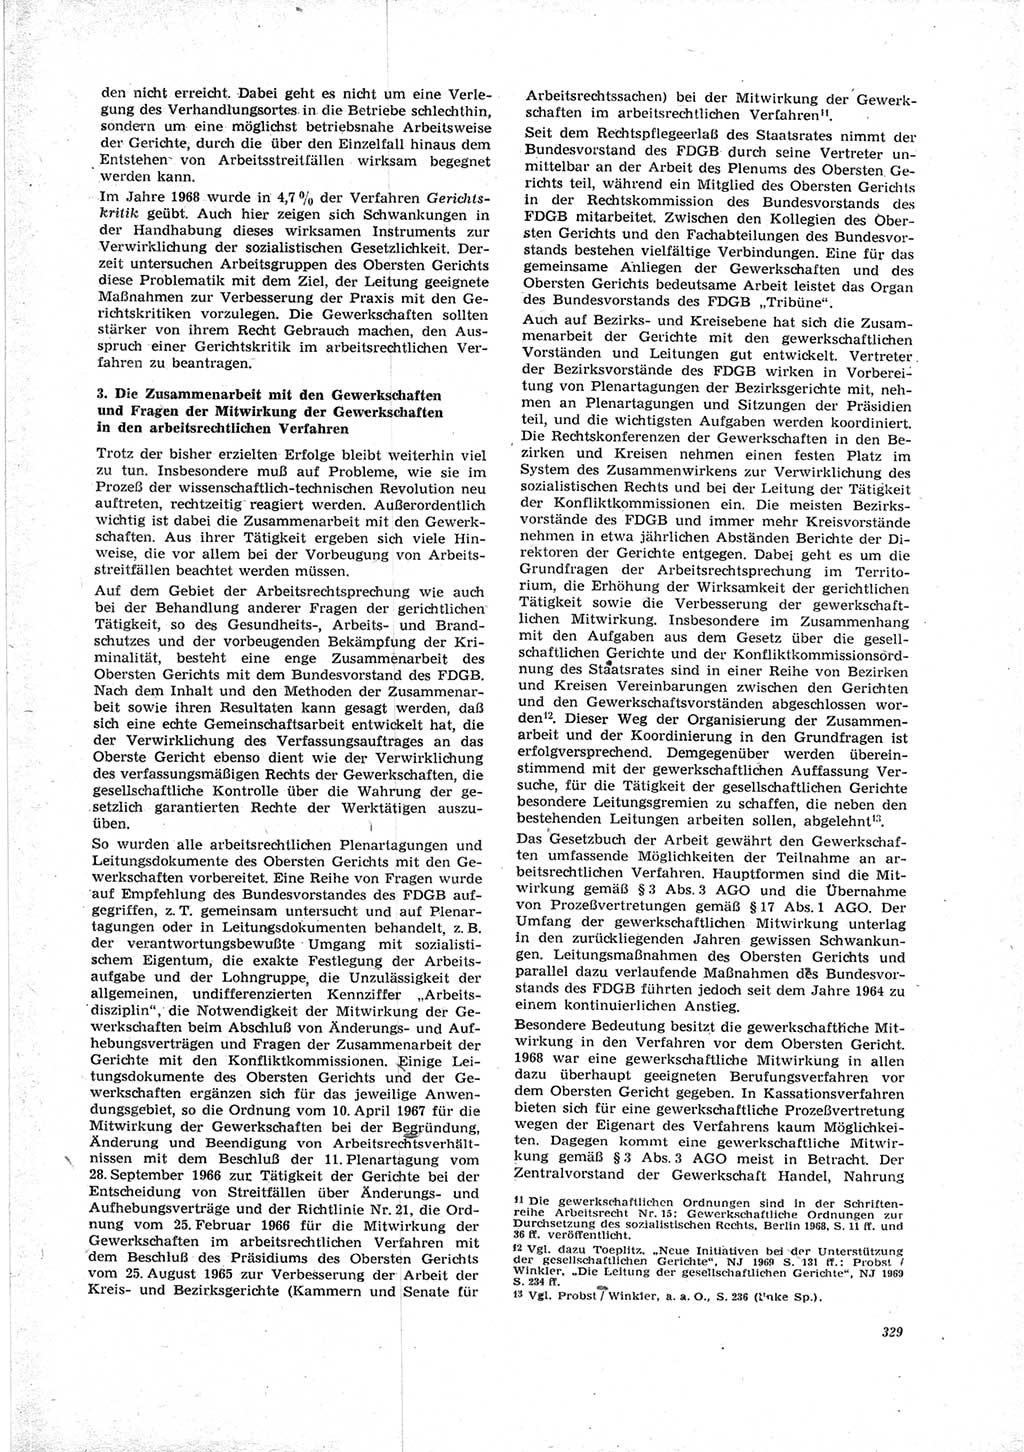 Neue Justiz (NJ), Zeitschrift für Recht und Rechtswissenschaft [Deutsche Demokratische Republik (DDR)], 23. Jahrgang 1969, Seite 329 (NJ DDR 1969, S. 329)